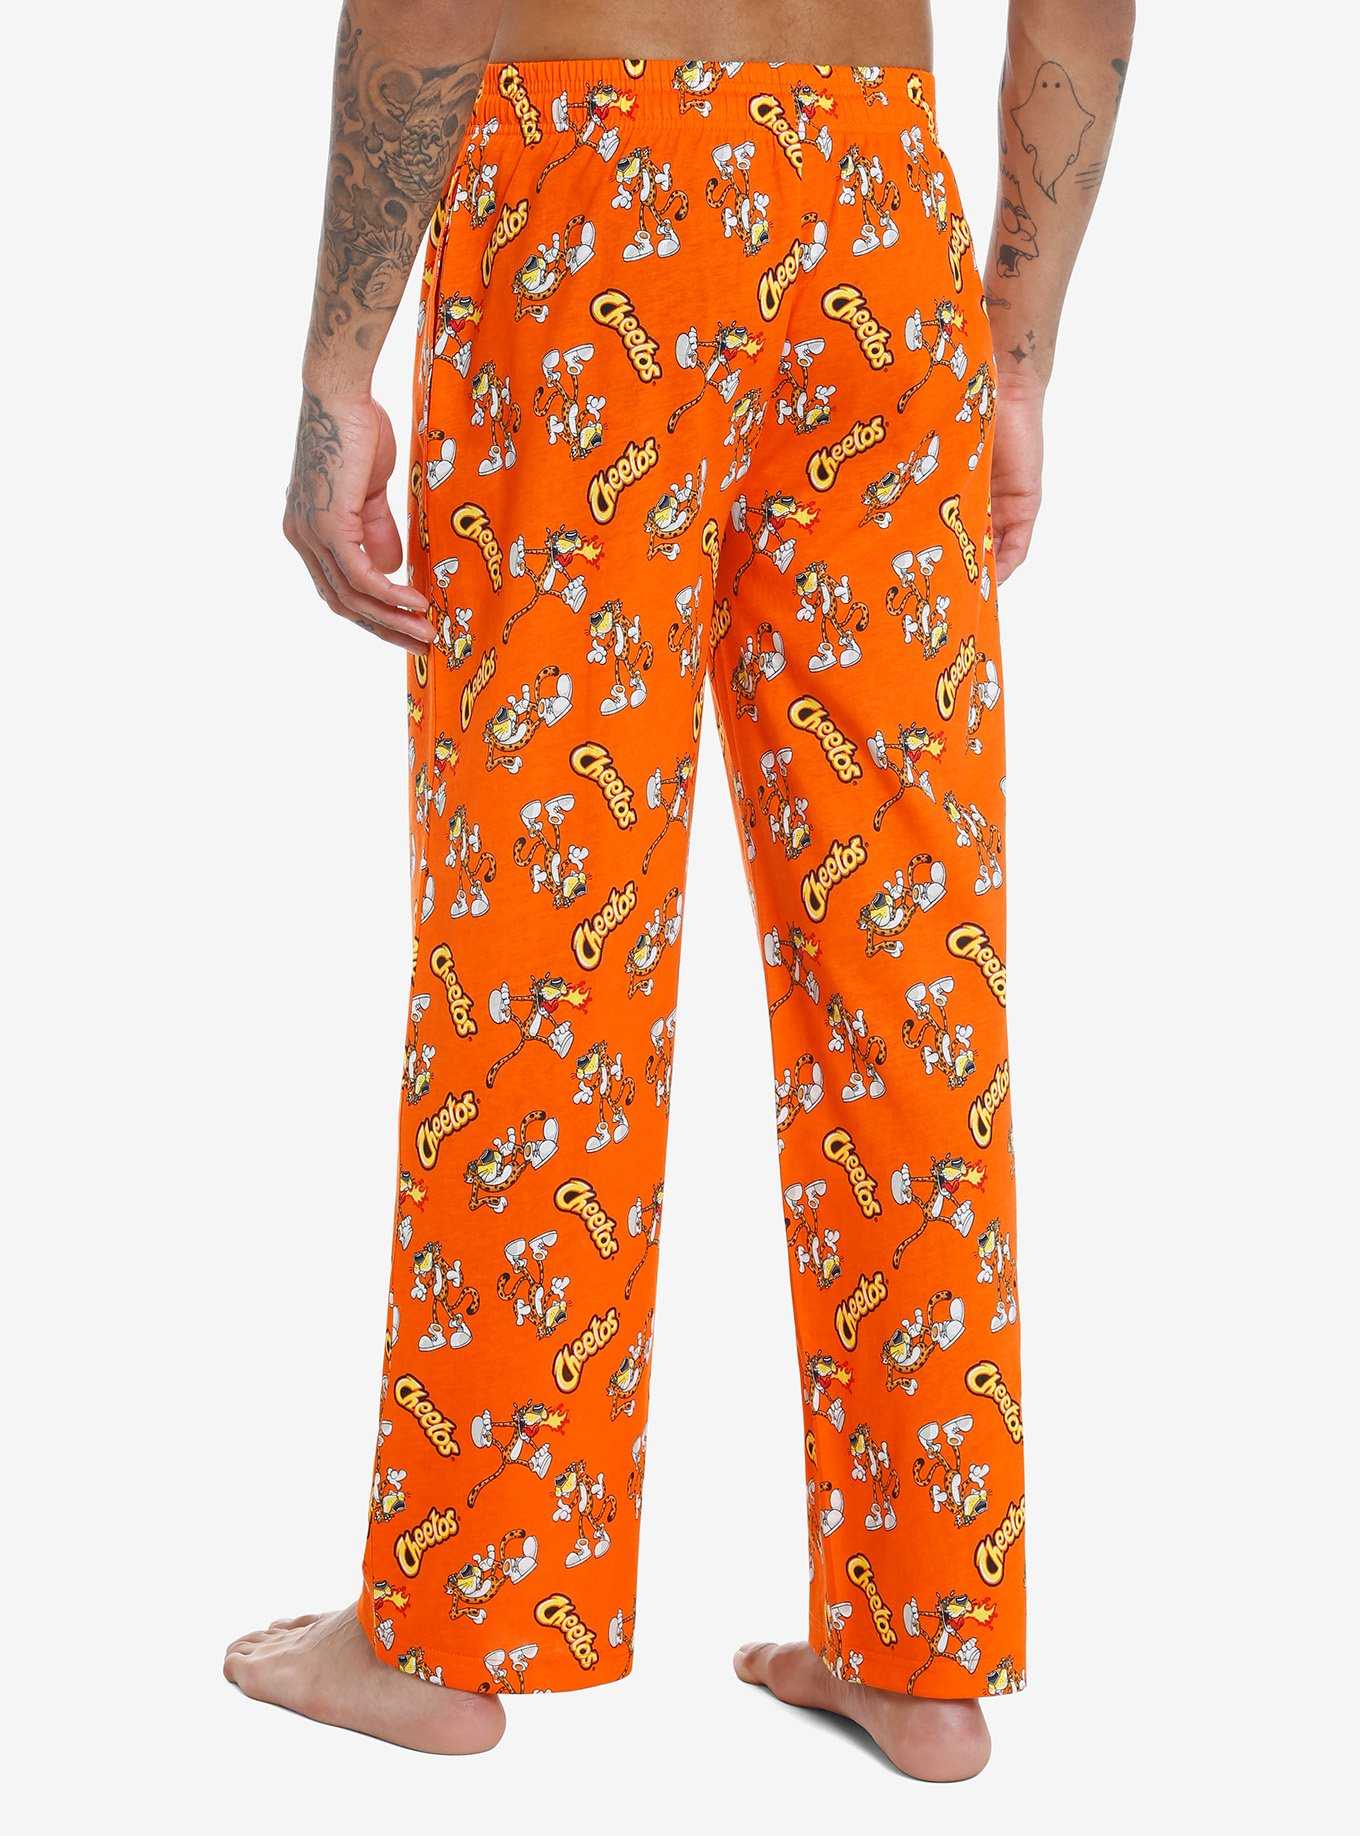 Cheetos Chester Cheetah Pajama Pants, , hi-res